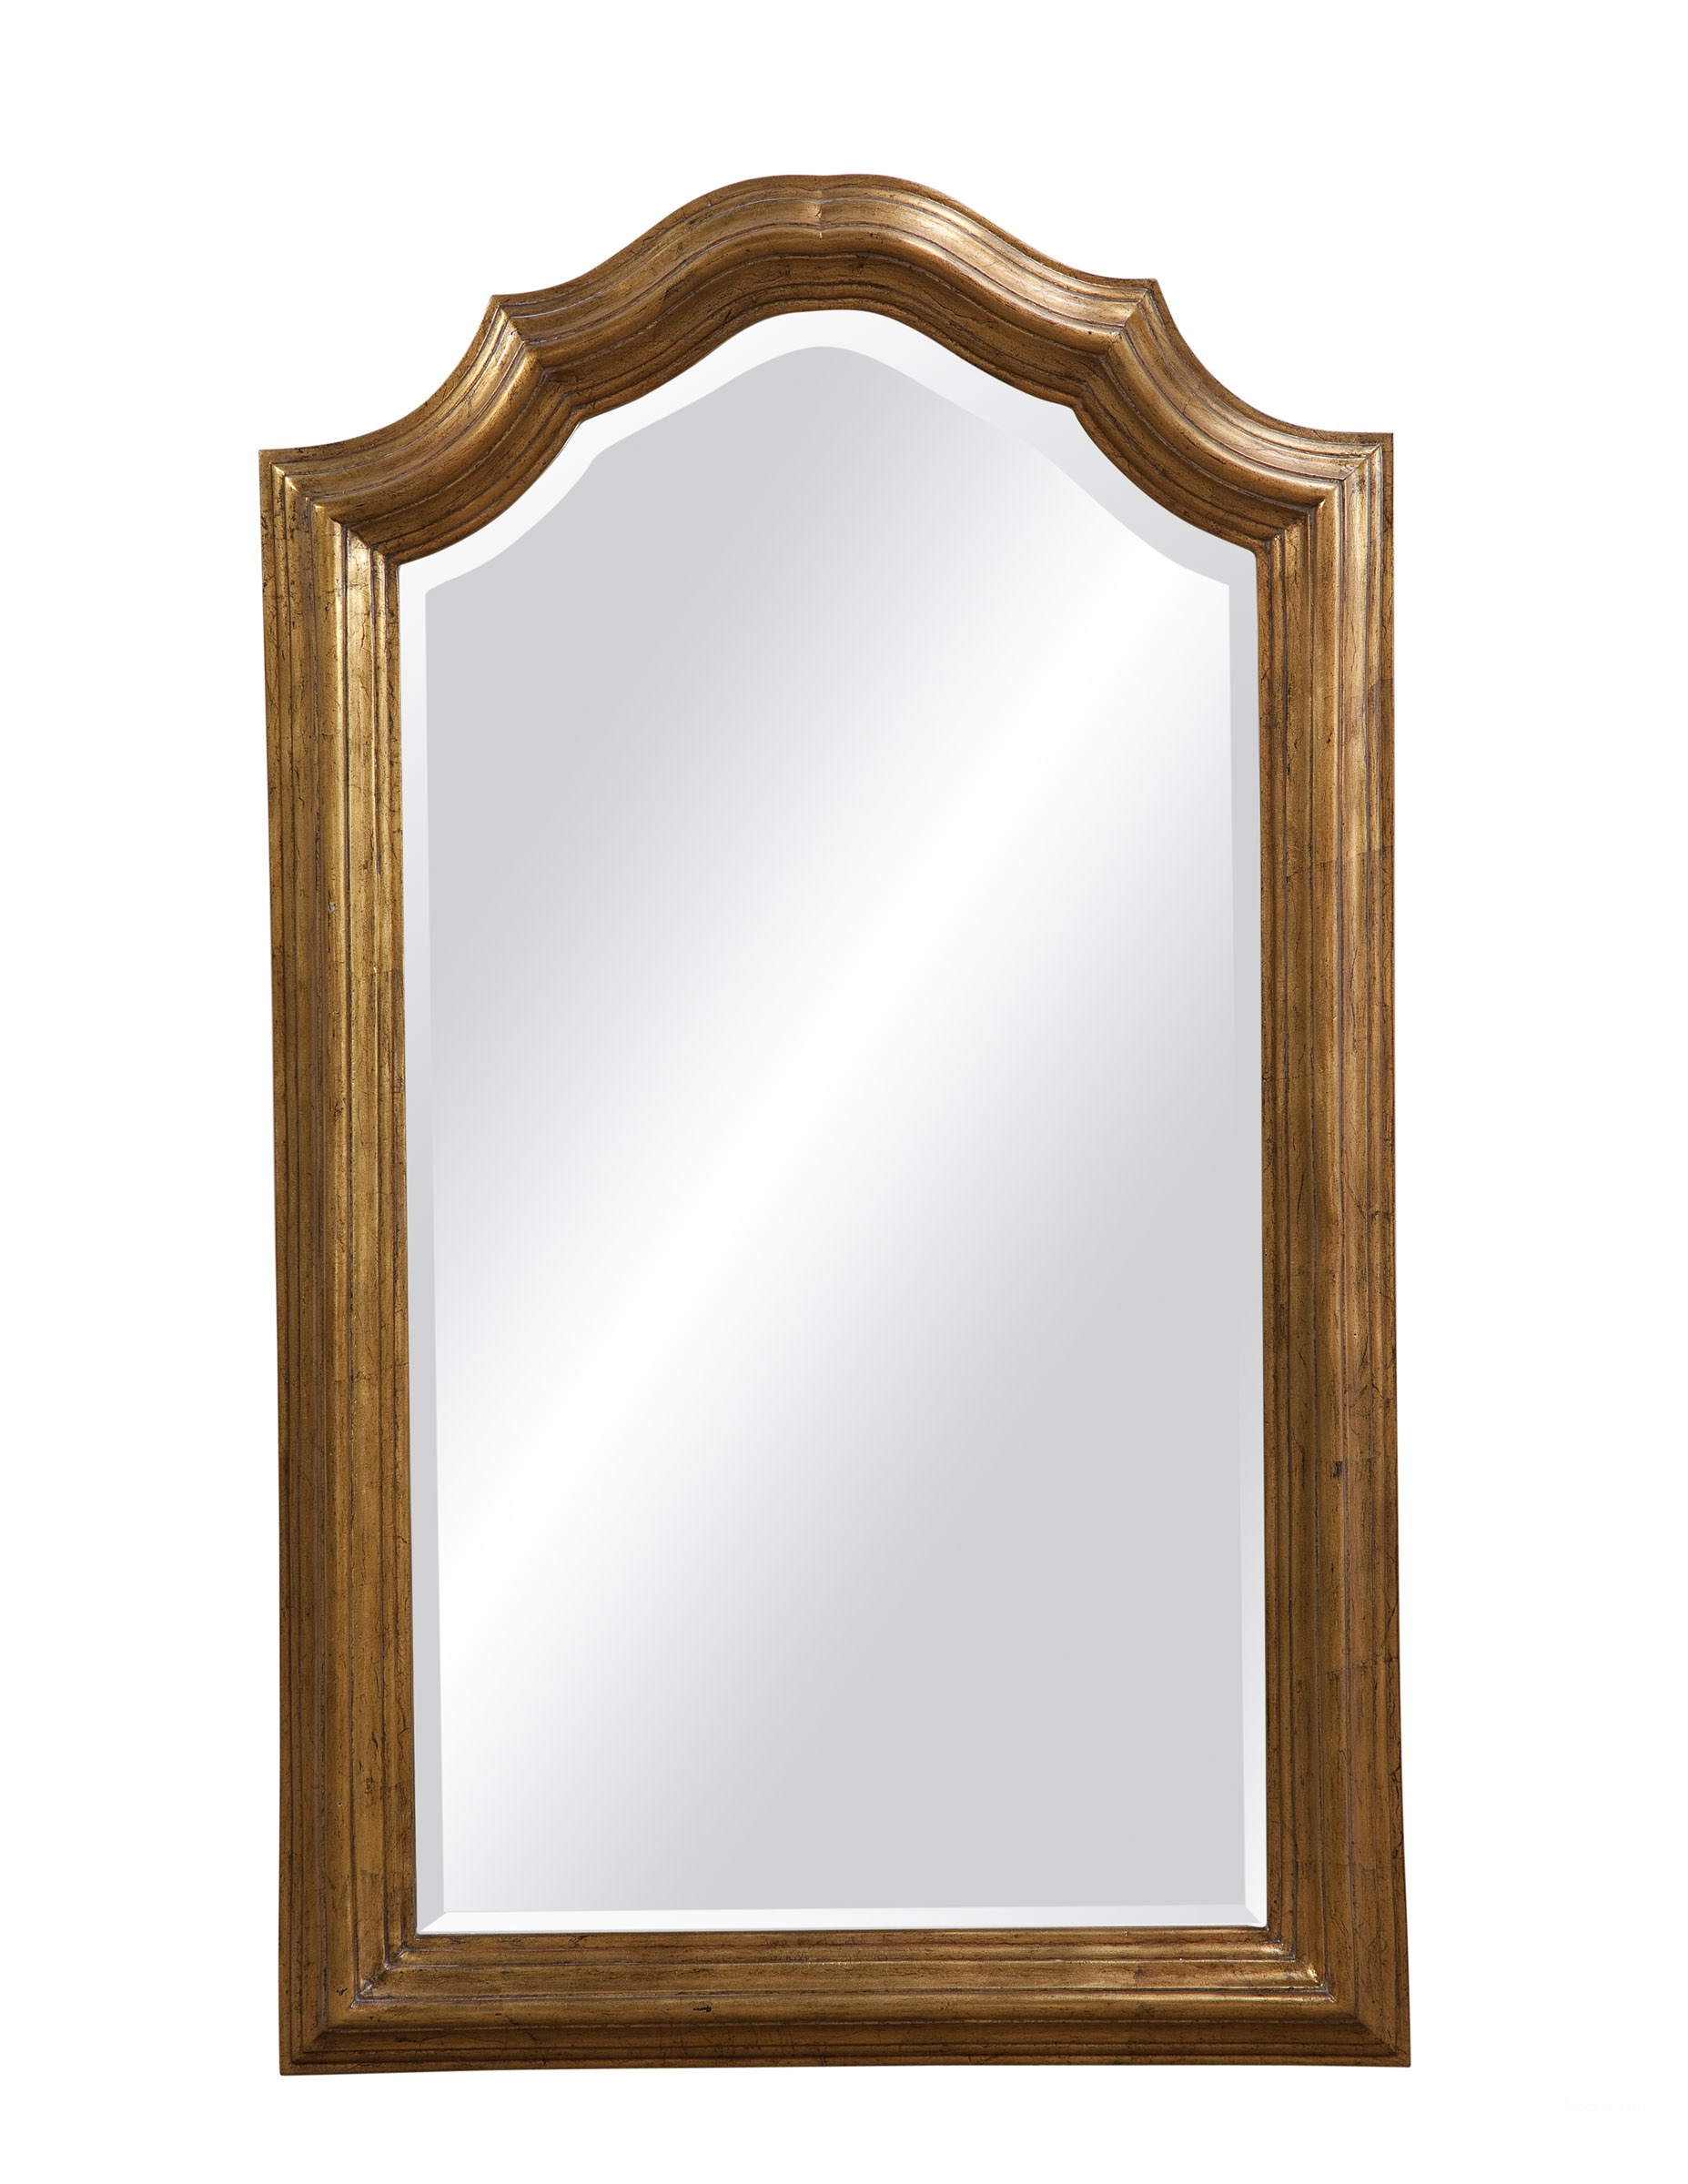 Купить зеркало в саратове. Зеркало настенное в деревянной раме. Зеркало в раме для прихожей. Настенные зеркала небольшие. Зеркало в деревянной раме для прихожей.